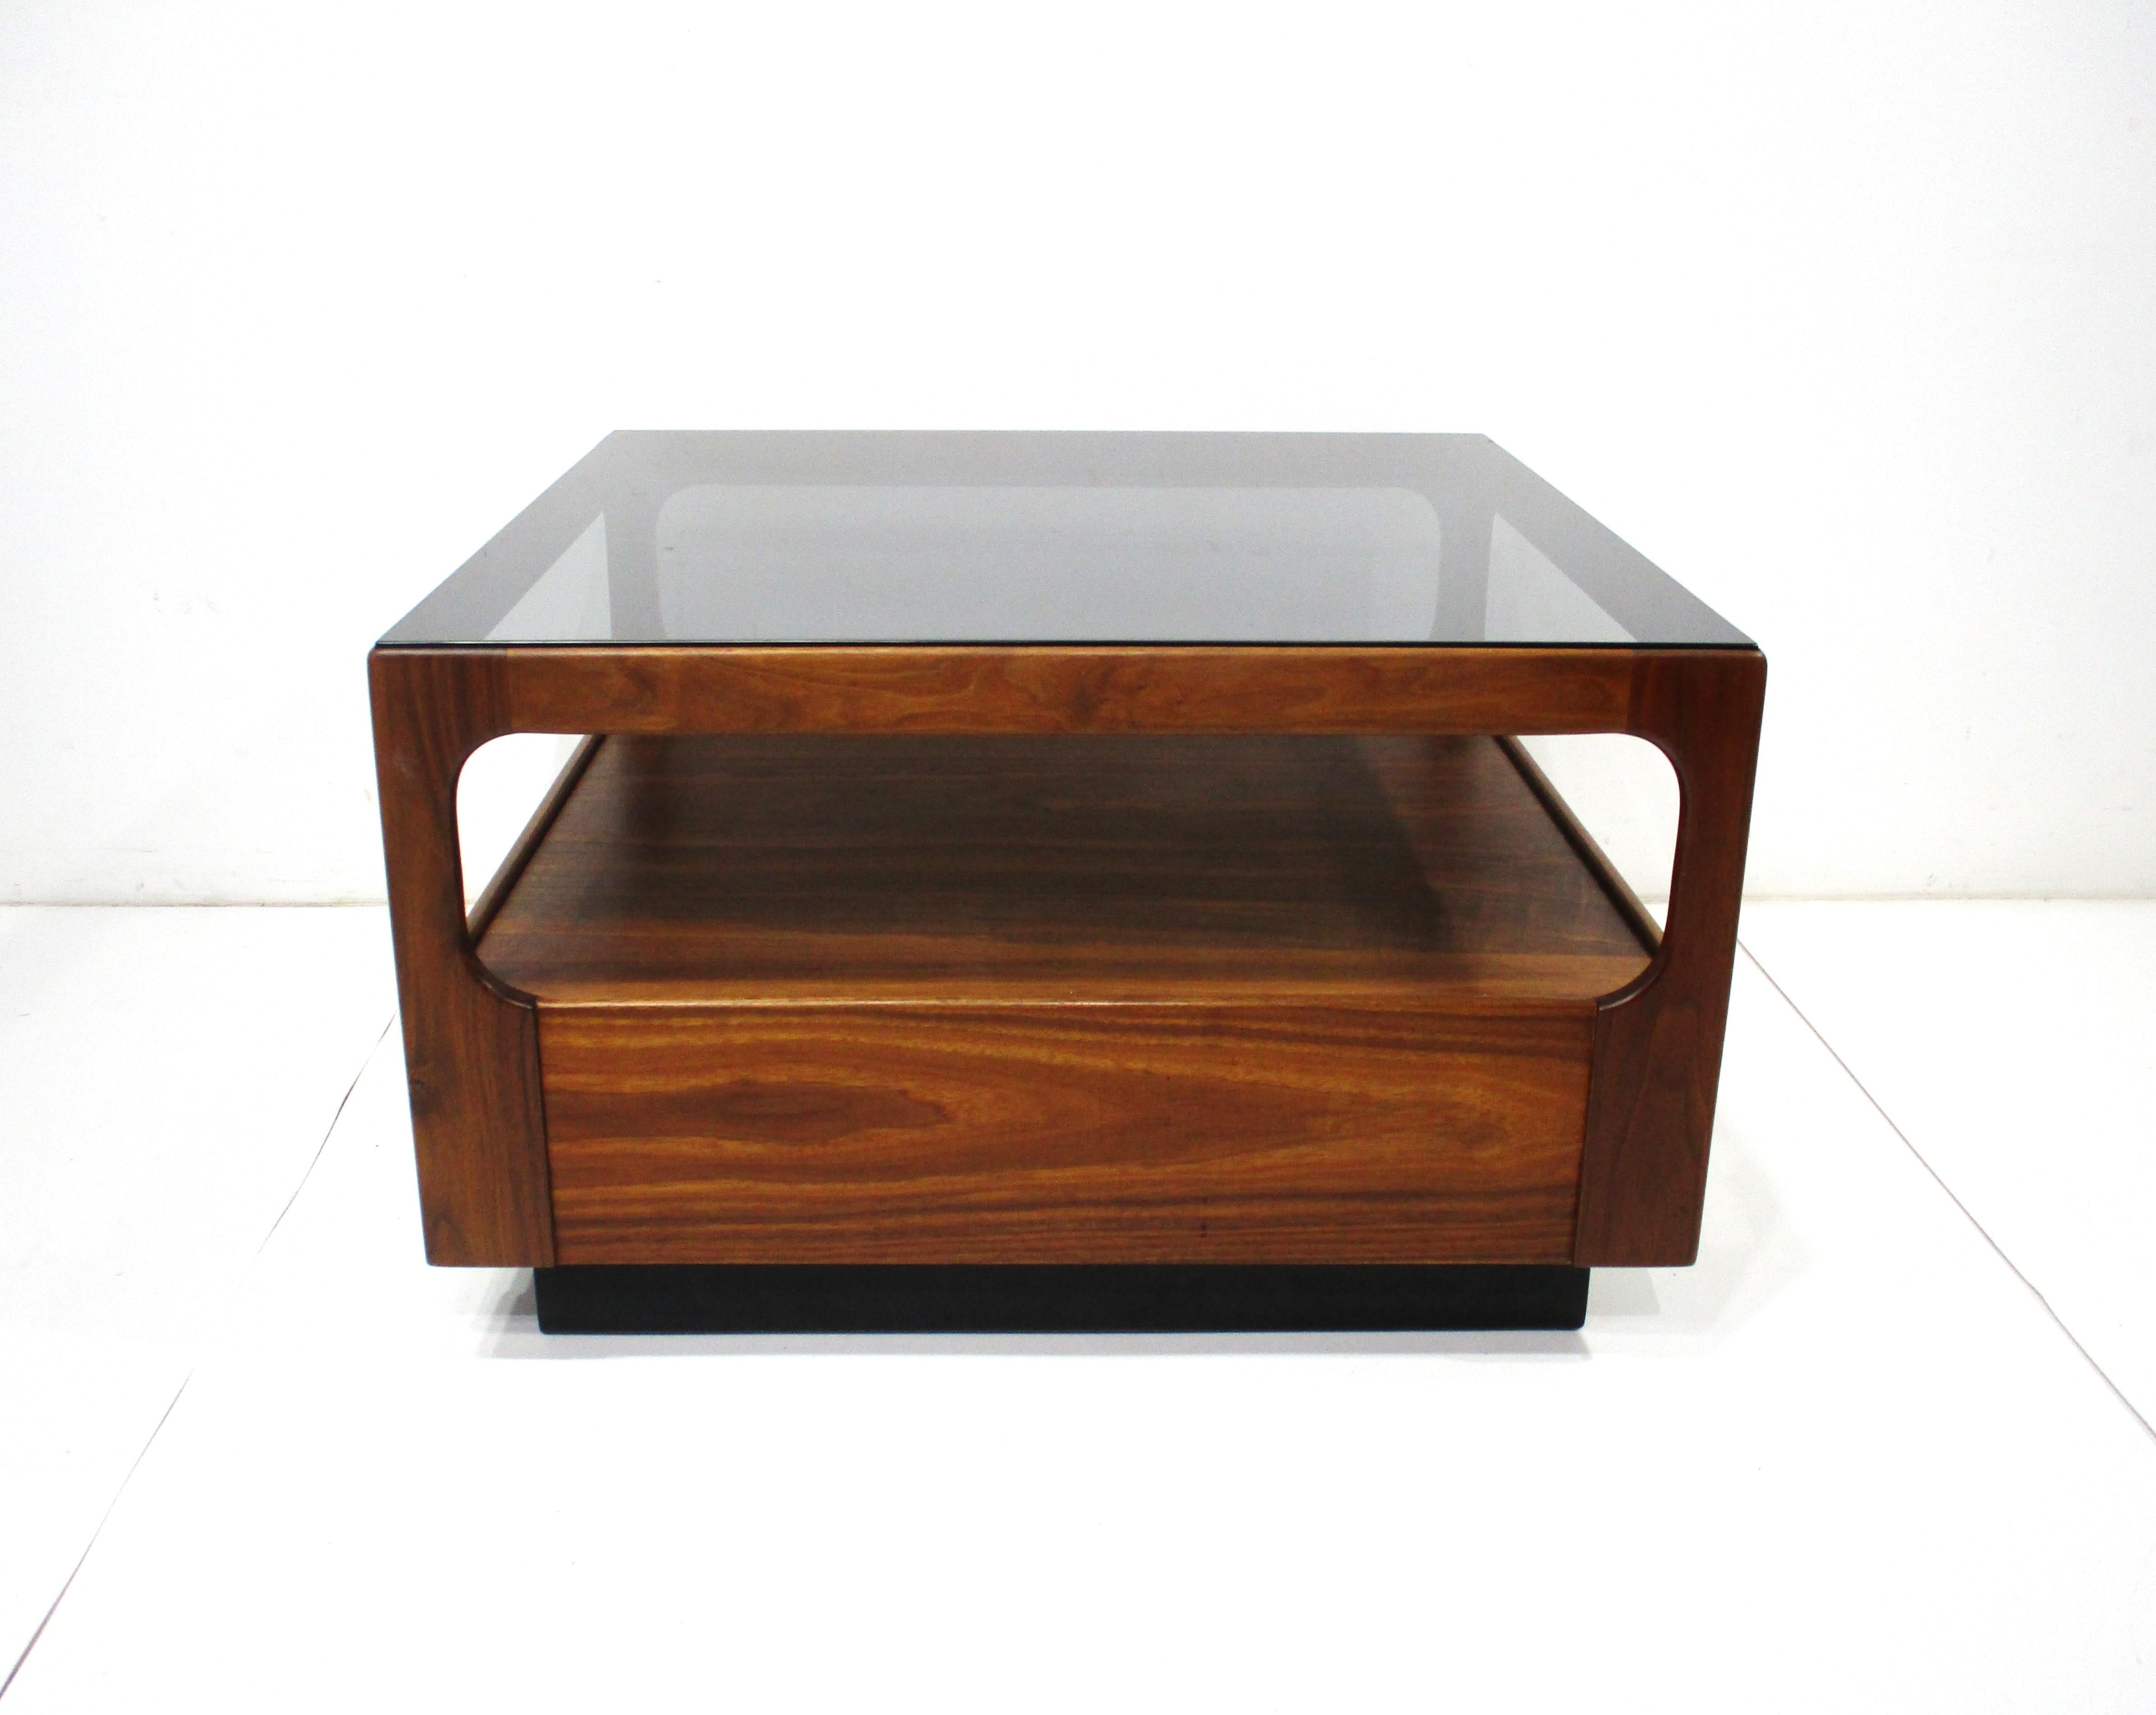 Ein quadratischer Couchtisch mit Rahmen aus dunklem Nussbaumholz und einer Platte mit Rauchglaseinsatz. Der Tisch hat ein unteres Regal für die Lagerung , die es sehr nützlich für Ihren Lebensraum macht. Hergestellt von Otmar in der Art des